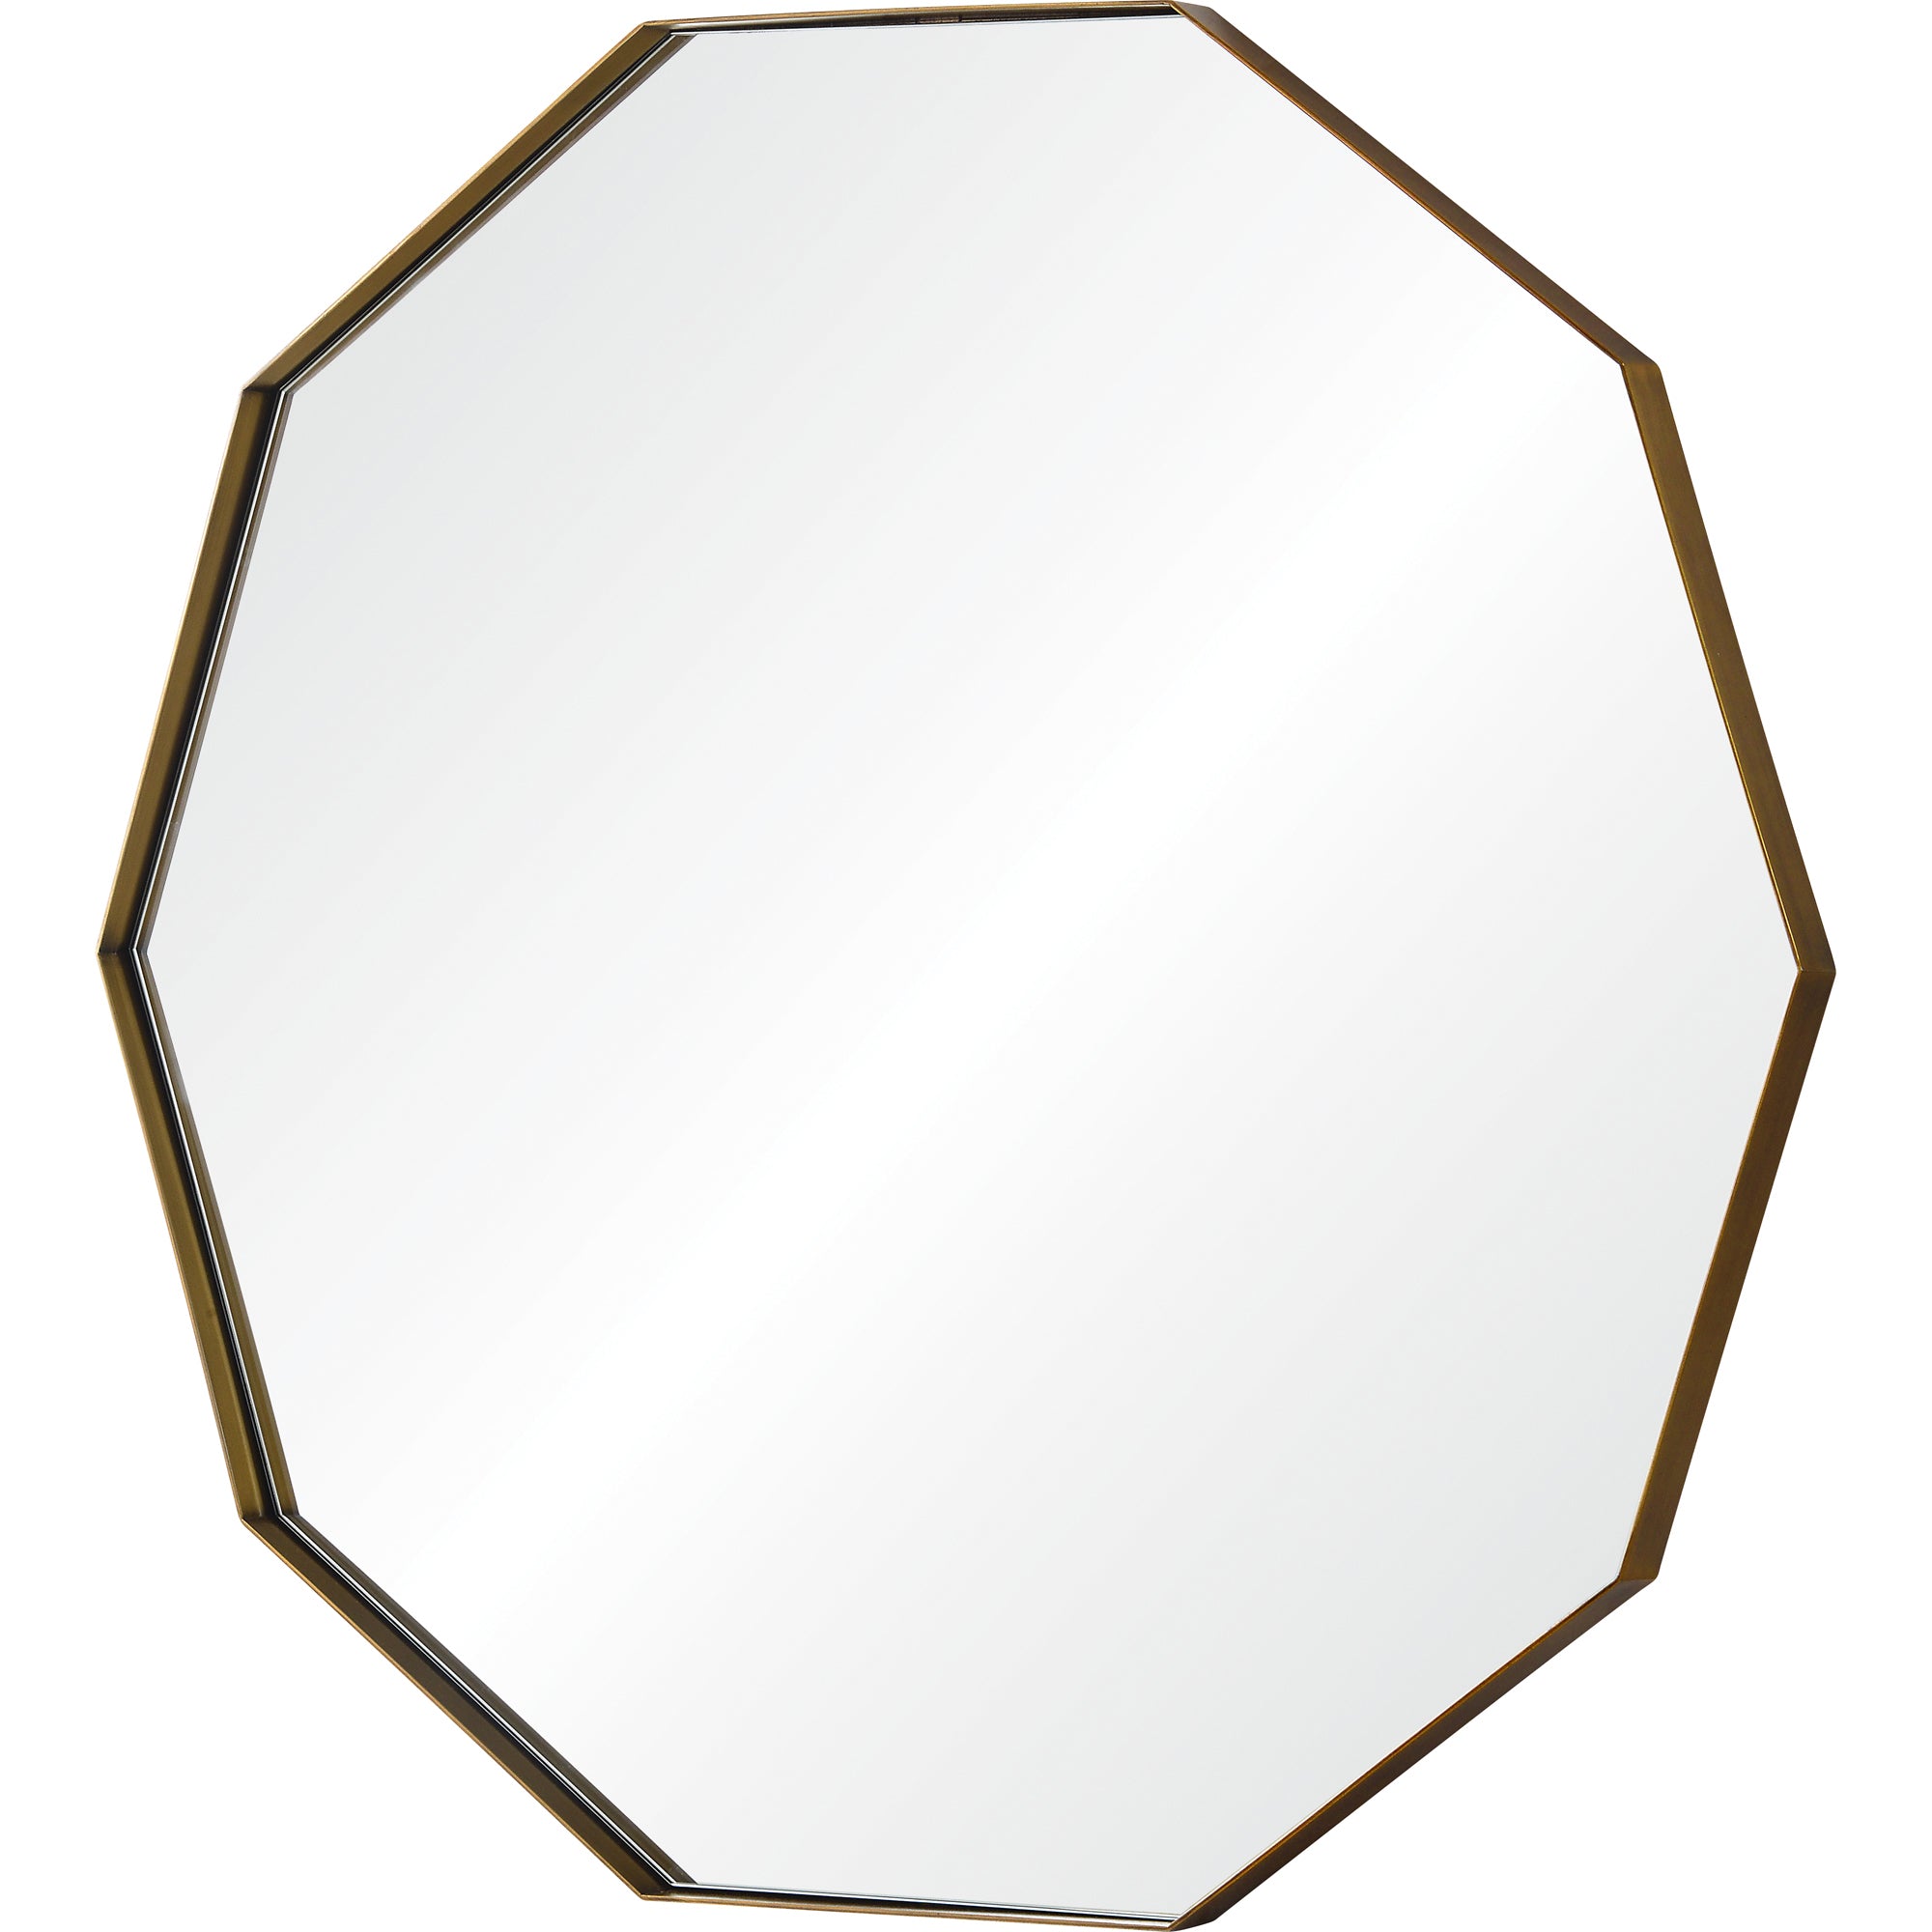 Cruz 40" Iron - Antique Brass Mirror